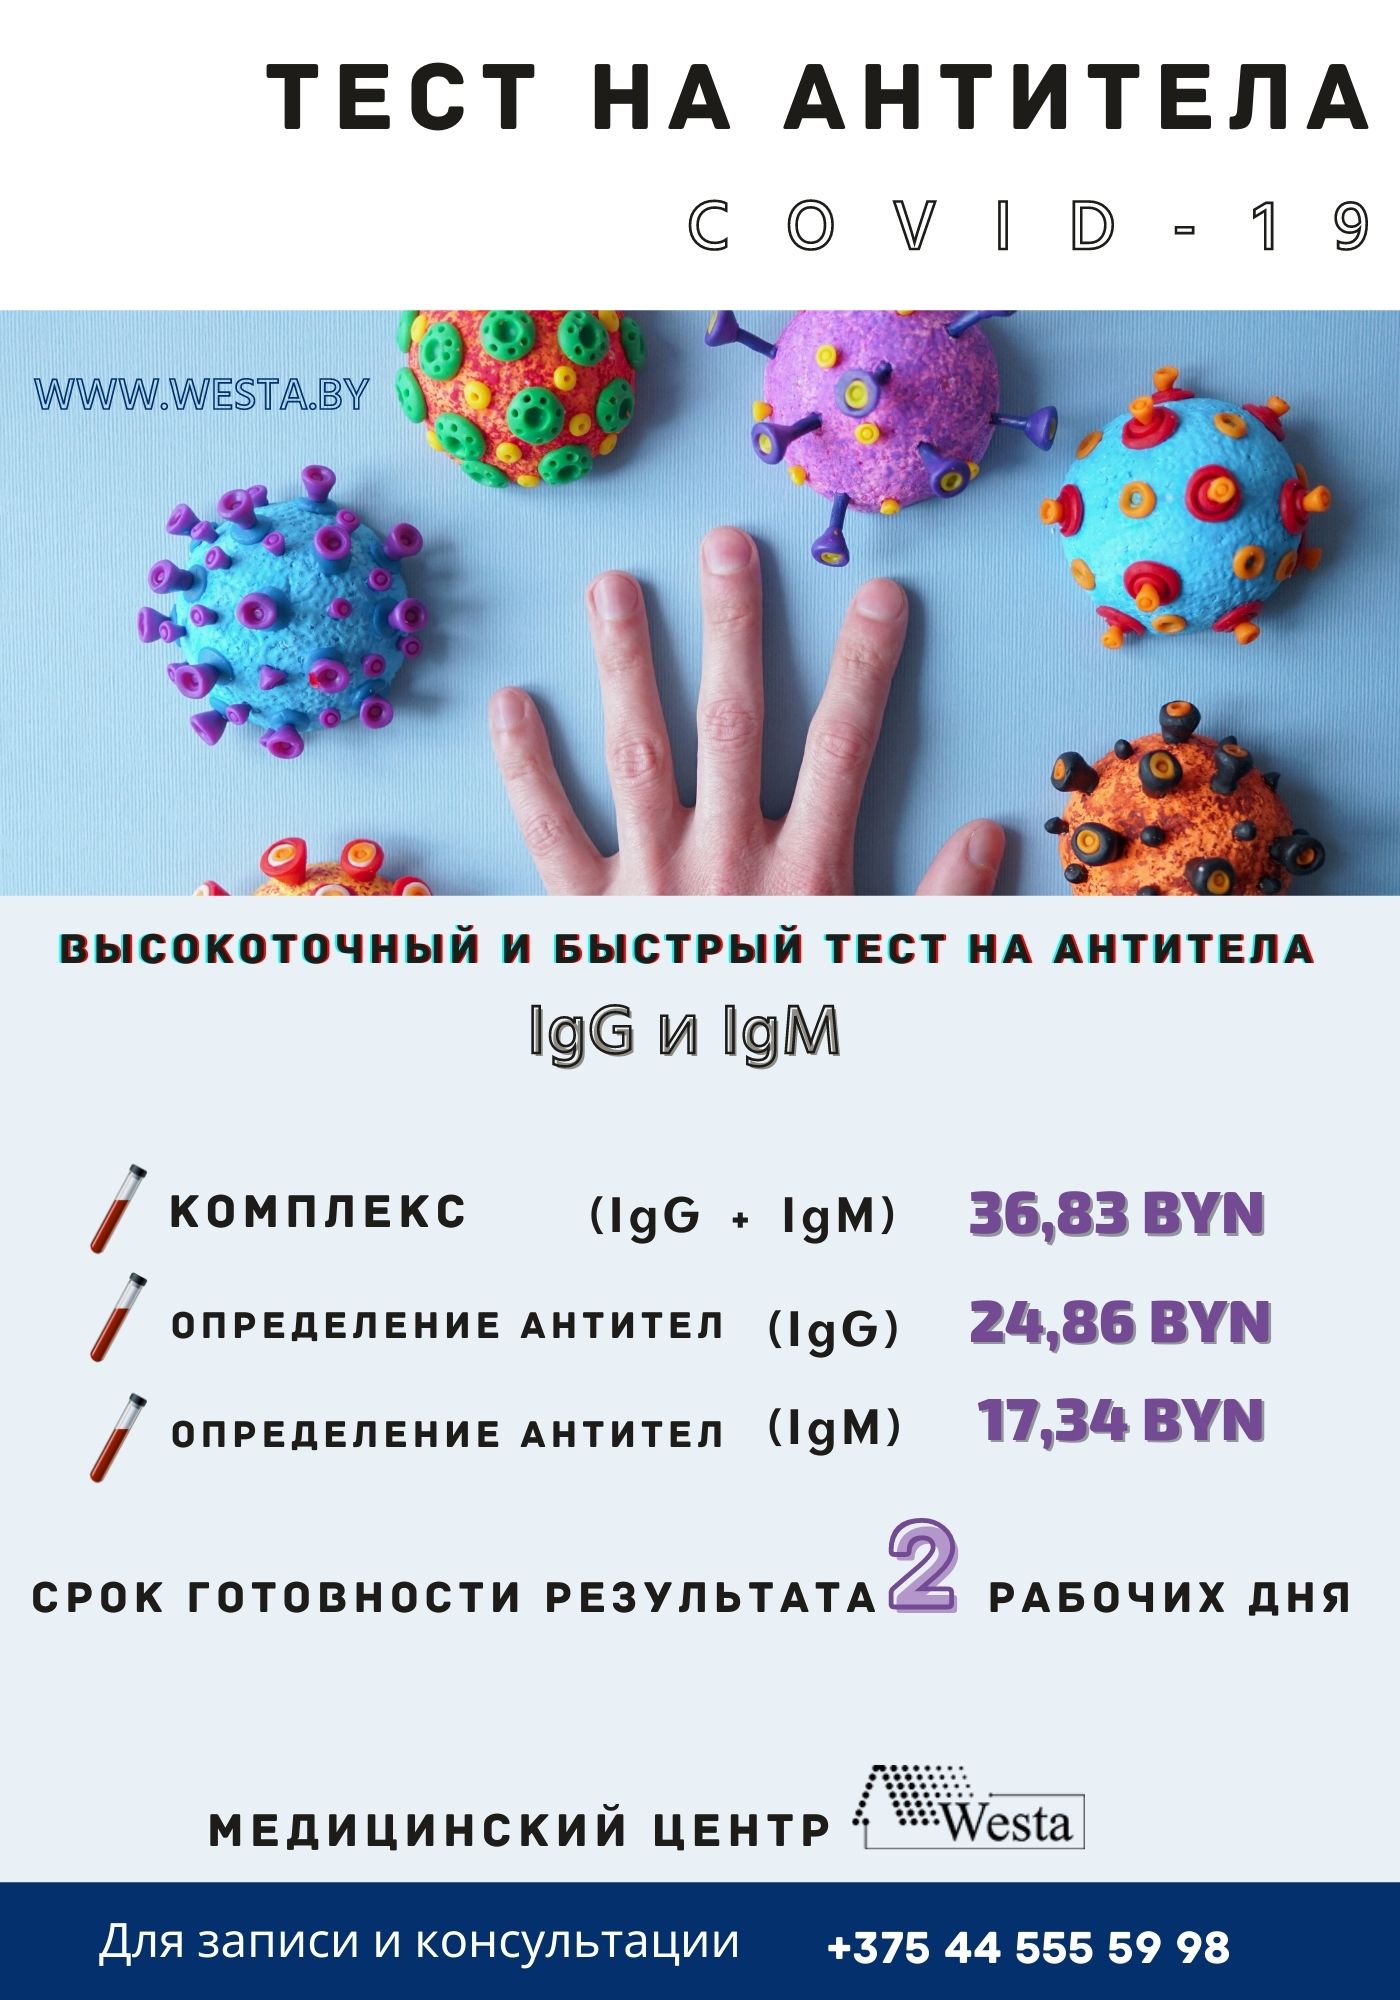 Тест на антитета (26).jpg